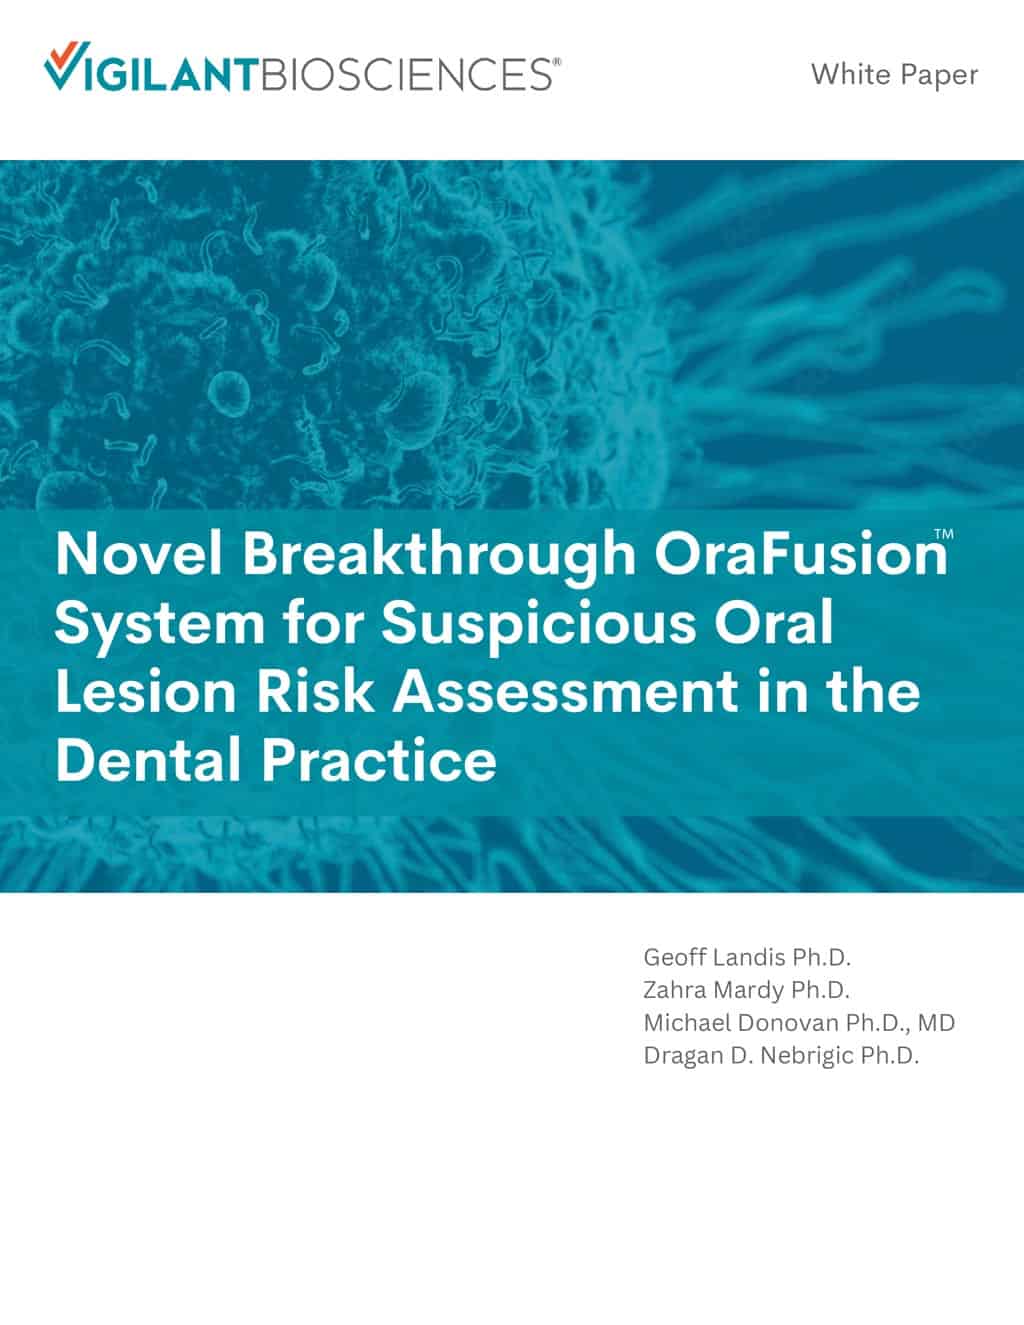 Novo sistema inovador OraFusion™ para avaliação de risco de lesões orais suspeitas na prática odontológica Capa do white paper